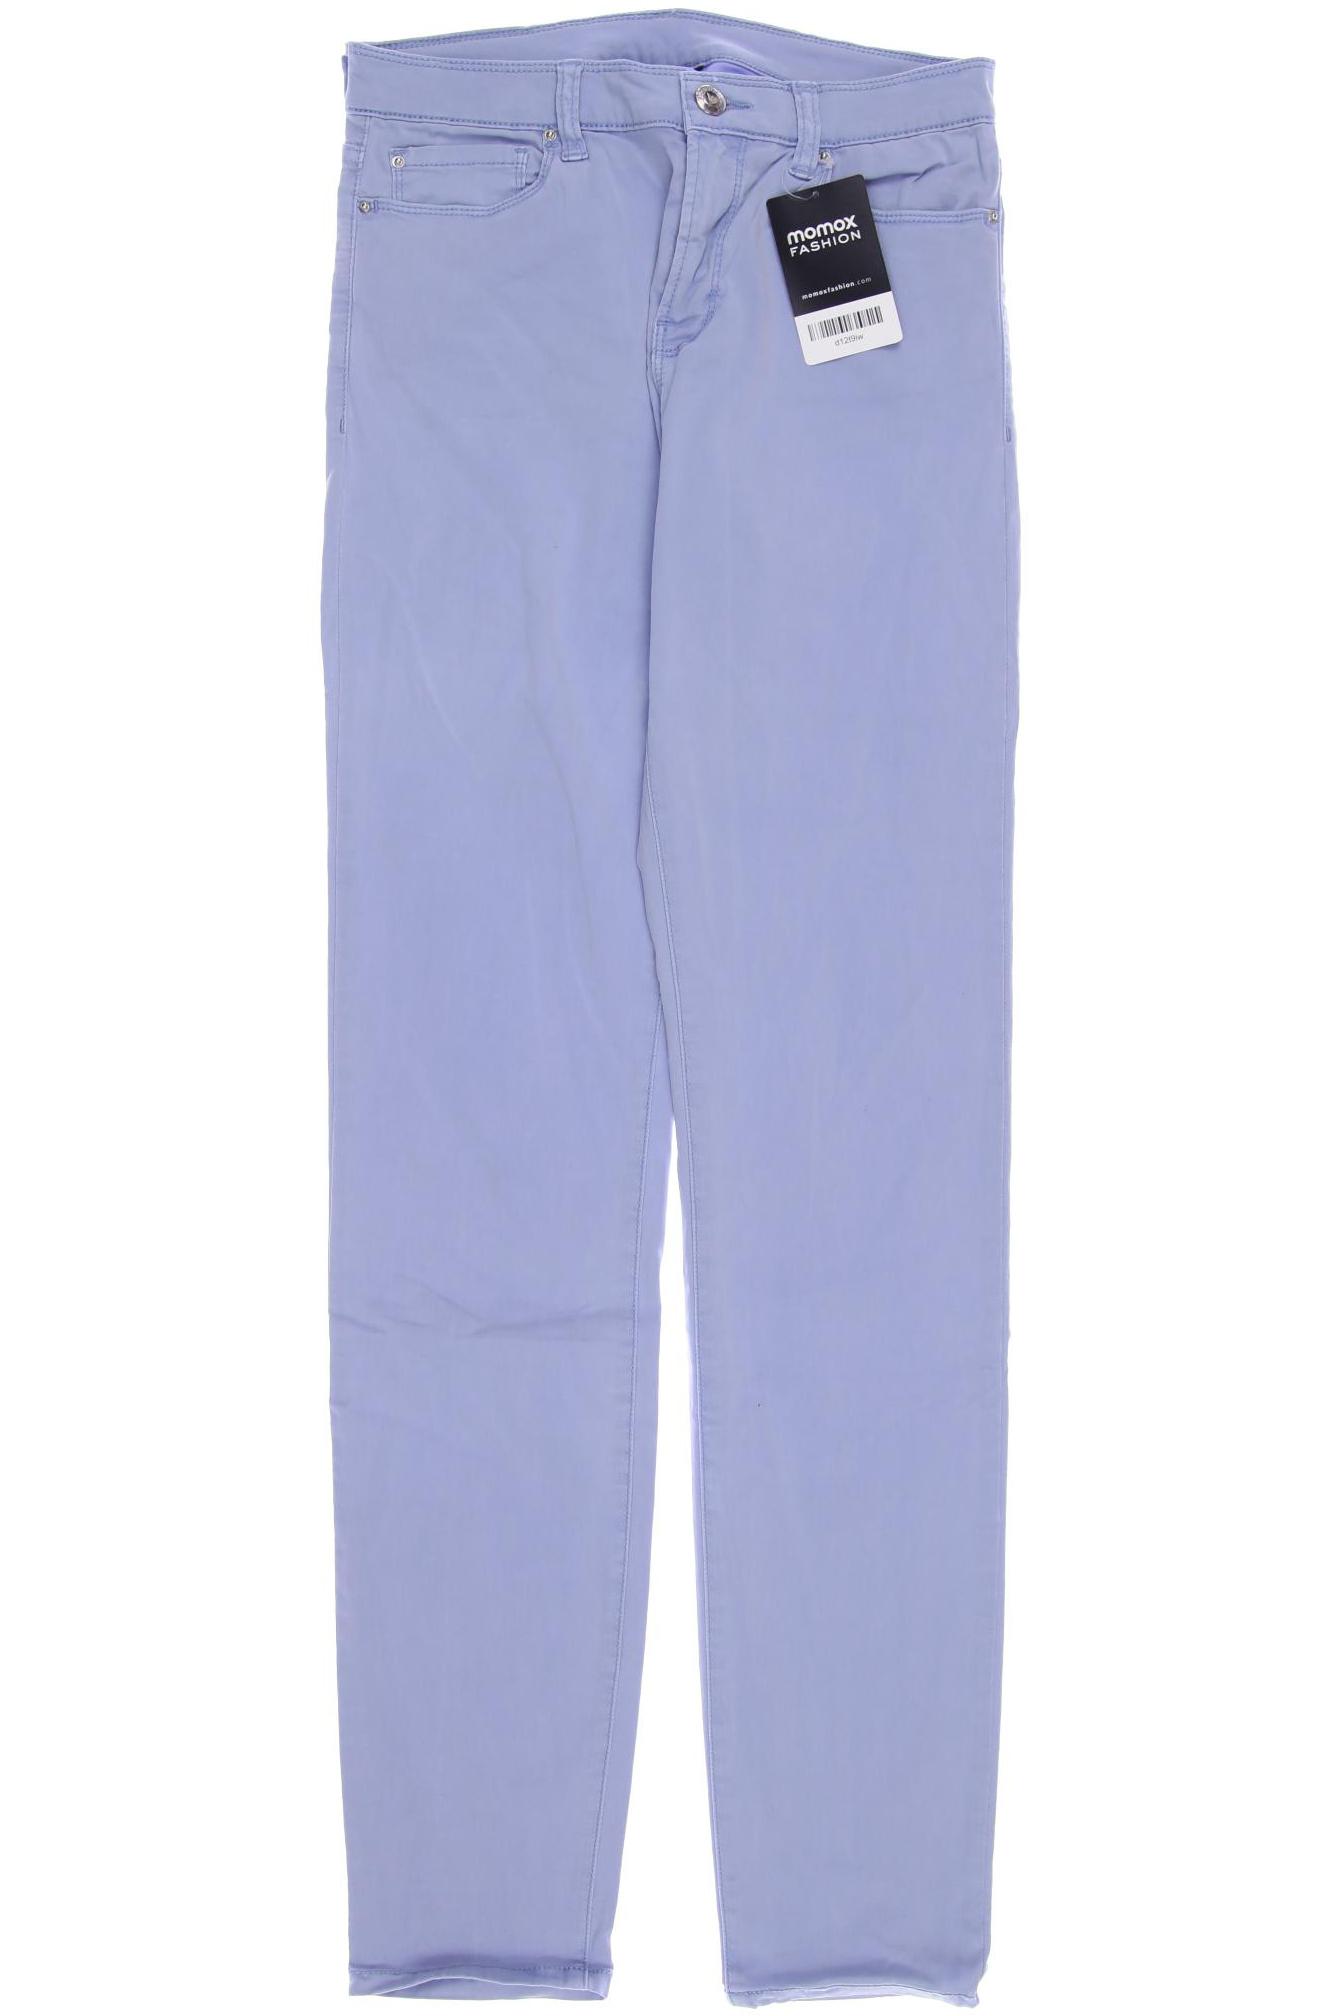 Emporio Armani Damen Jeans, blau von Emporio Armani